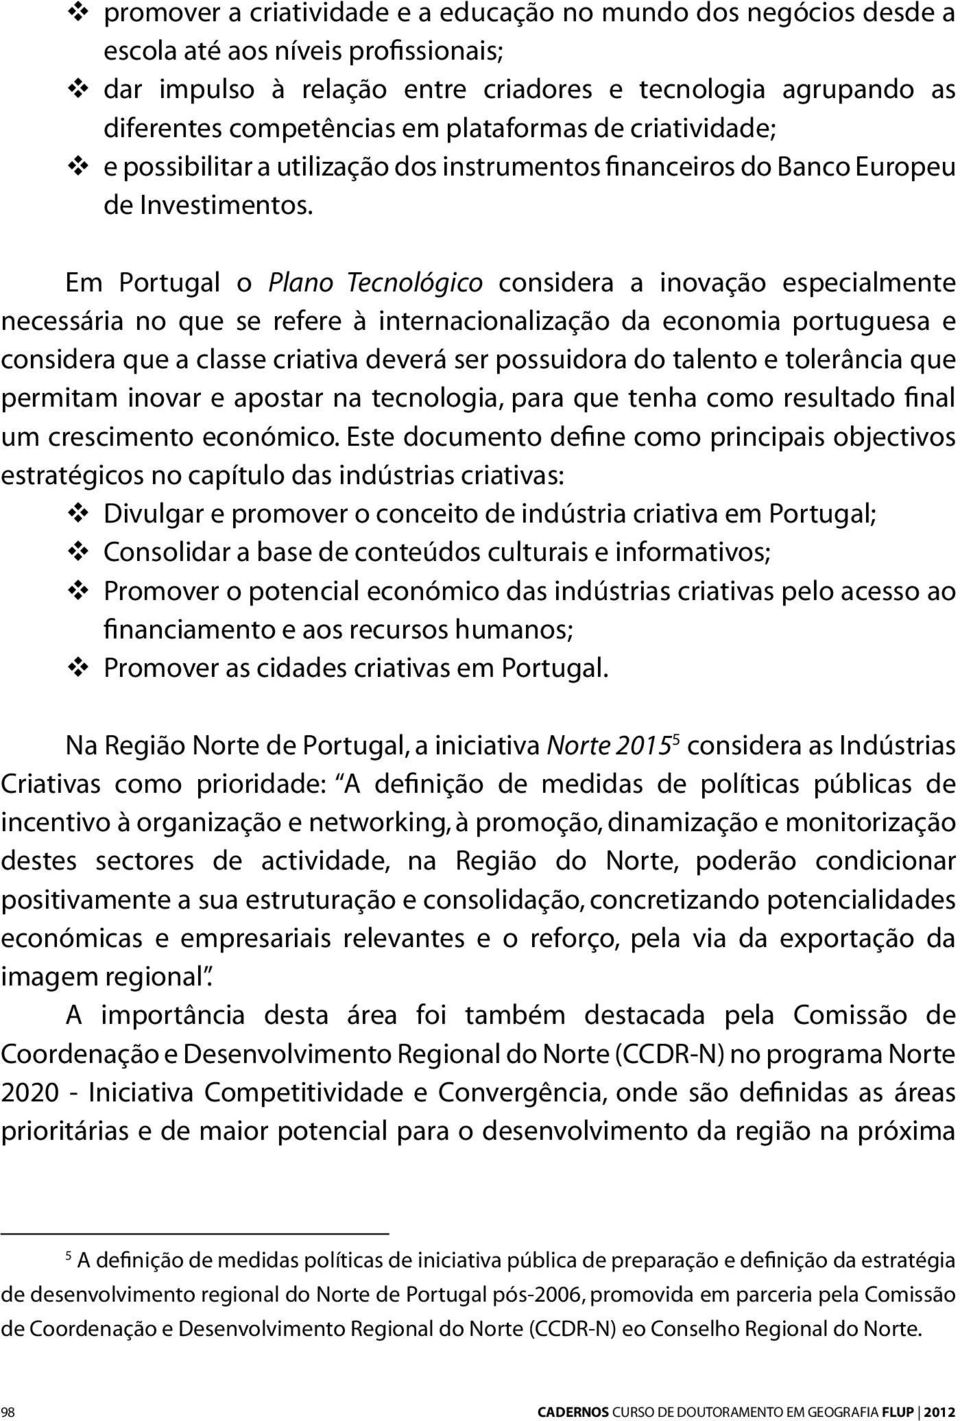 Em Portugal o Plano Tecnológico considera a inovação especialmente necessária no que se refere à internacionalização da economia portuguesa e considera que a classe criativa deverá ser possuidora do